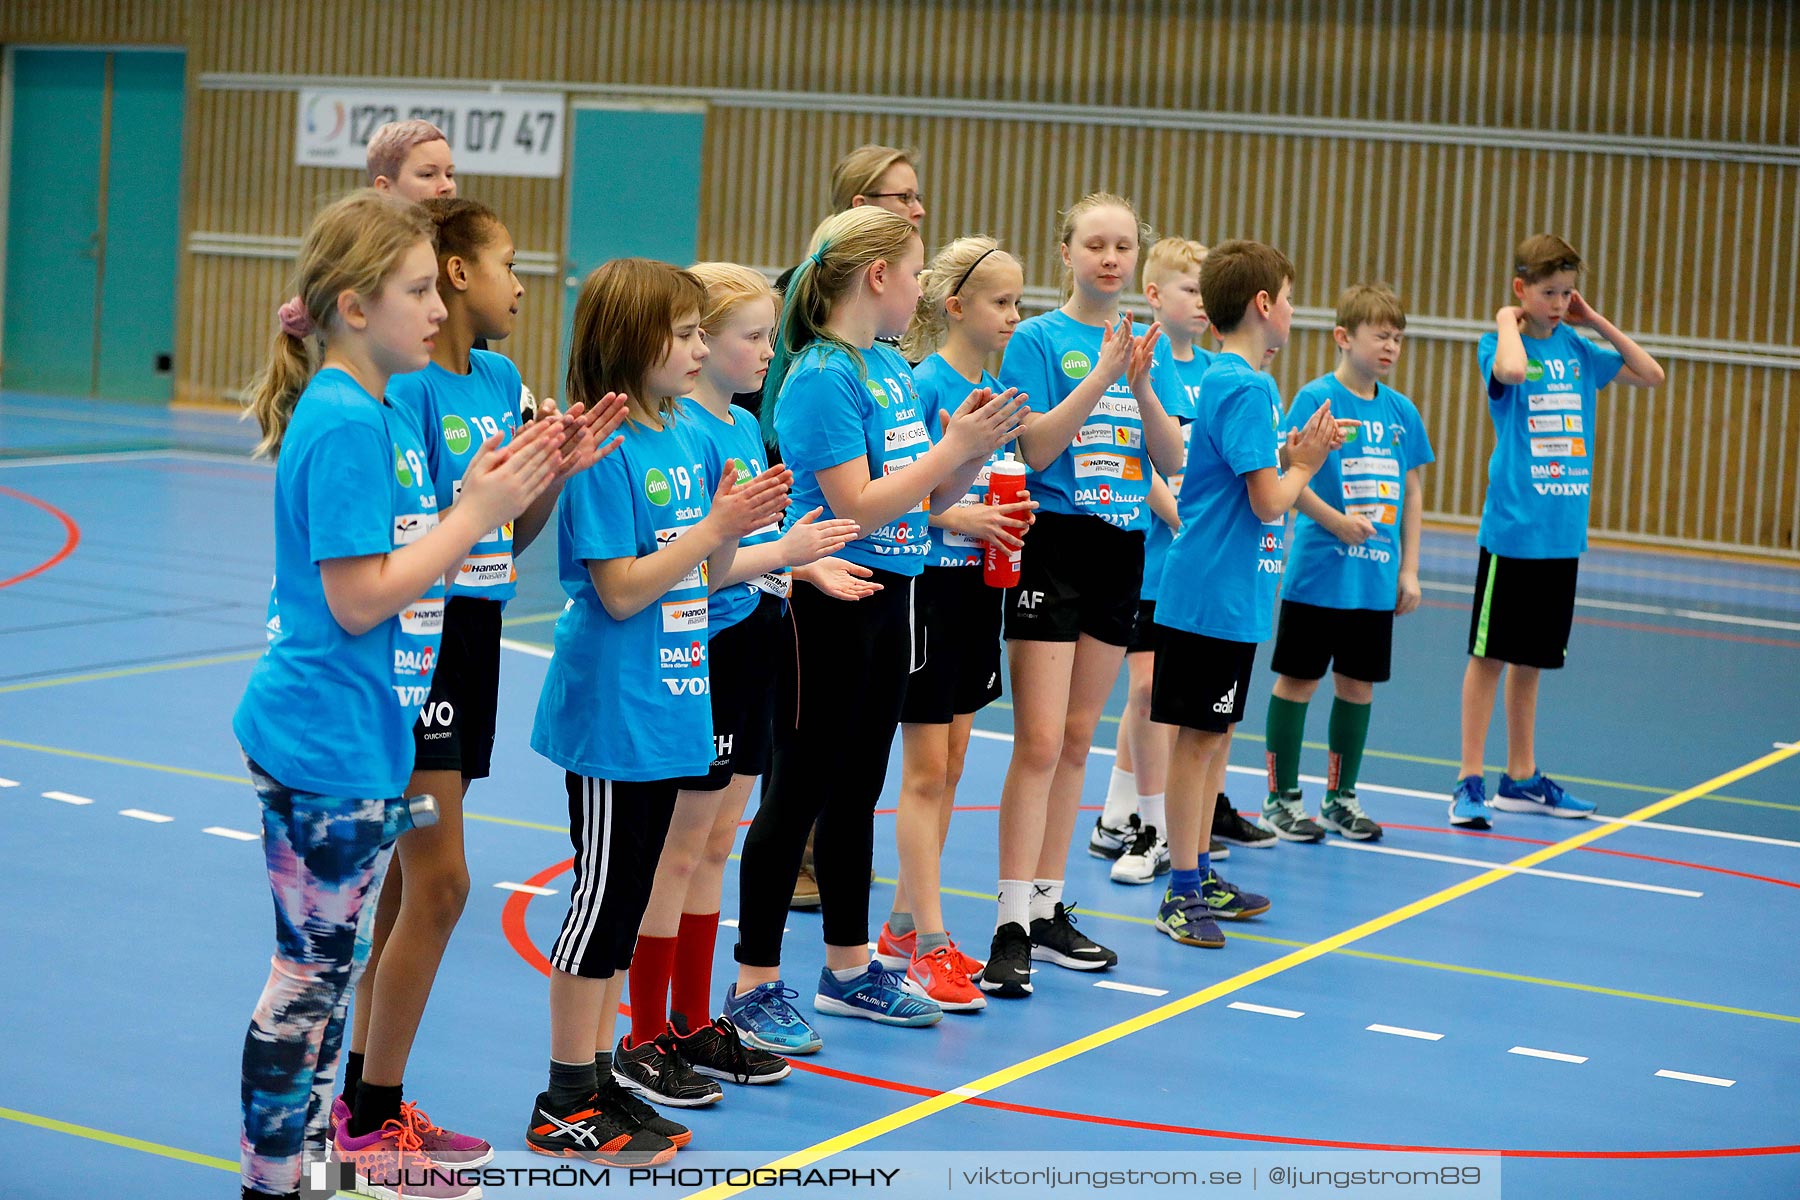 Klasshandboll Skövde 2019 Åldersklass 2008,mix,Arena Skövde,Skövde,Sverige,Handboll,,2019,211838